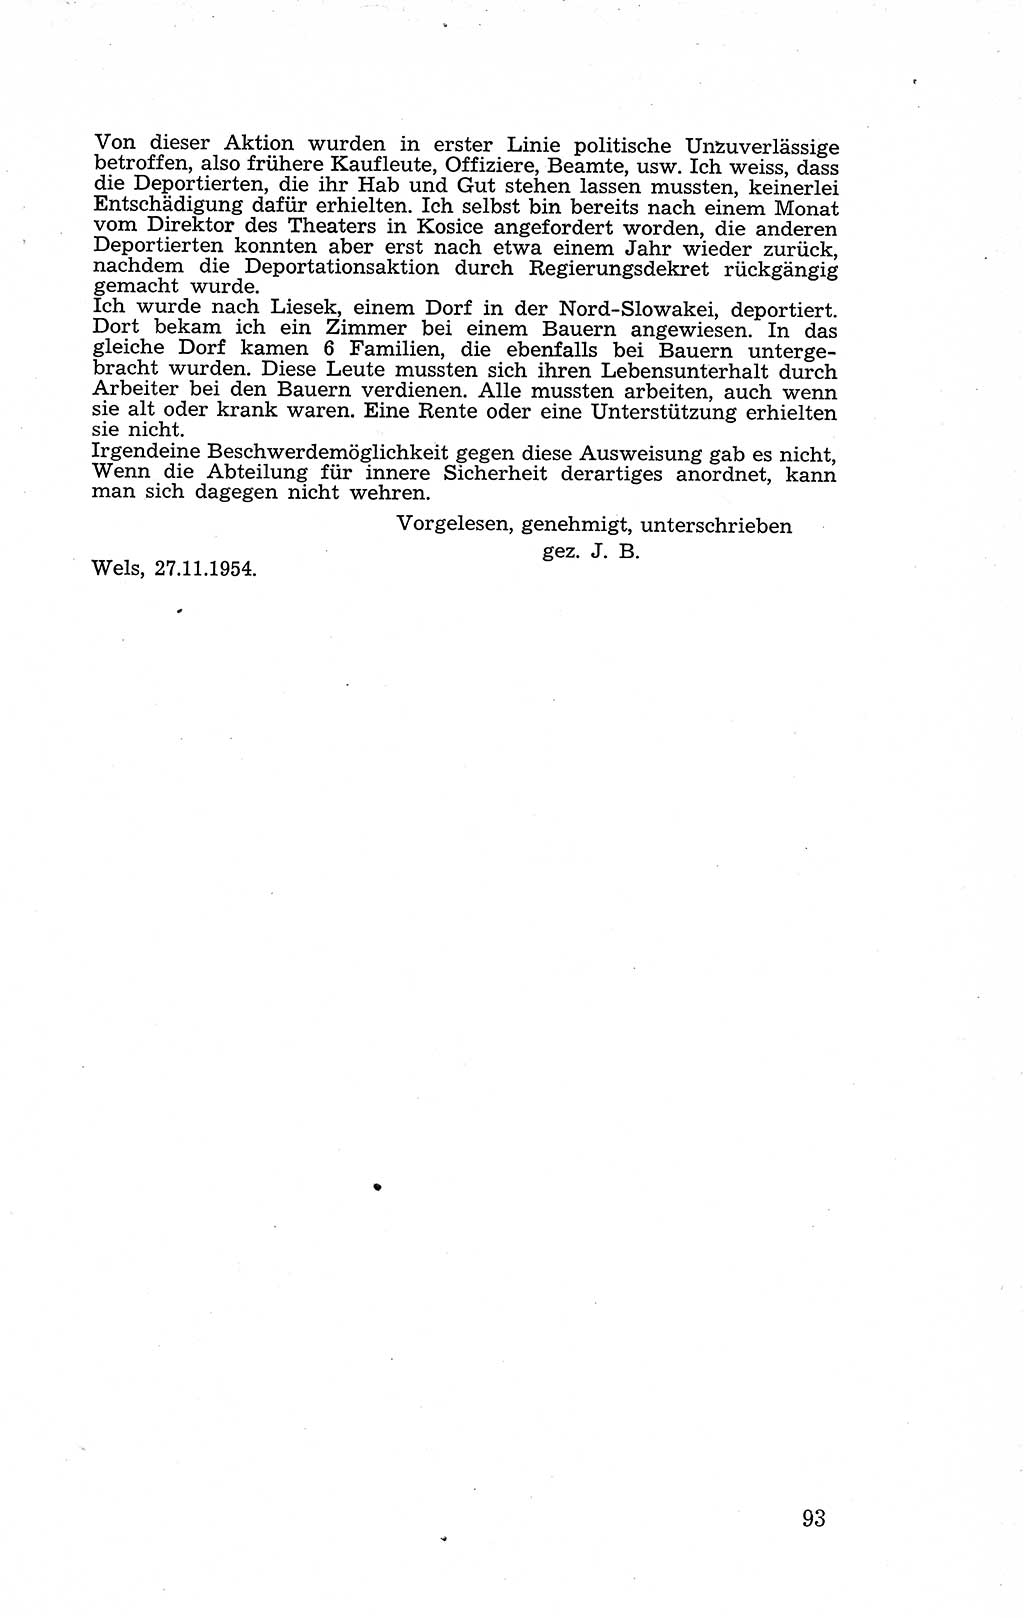 Recht in Fesseln, Dokumente, Internationale Juristen-Kommission [Bundesrepublik Deutschland (BRD)] 1955, Seite 93 (R. Dok. IJK BRD 1955, S. 93)